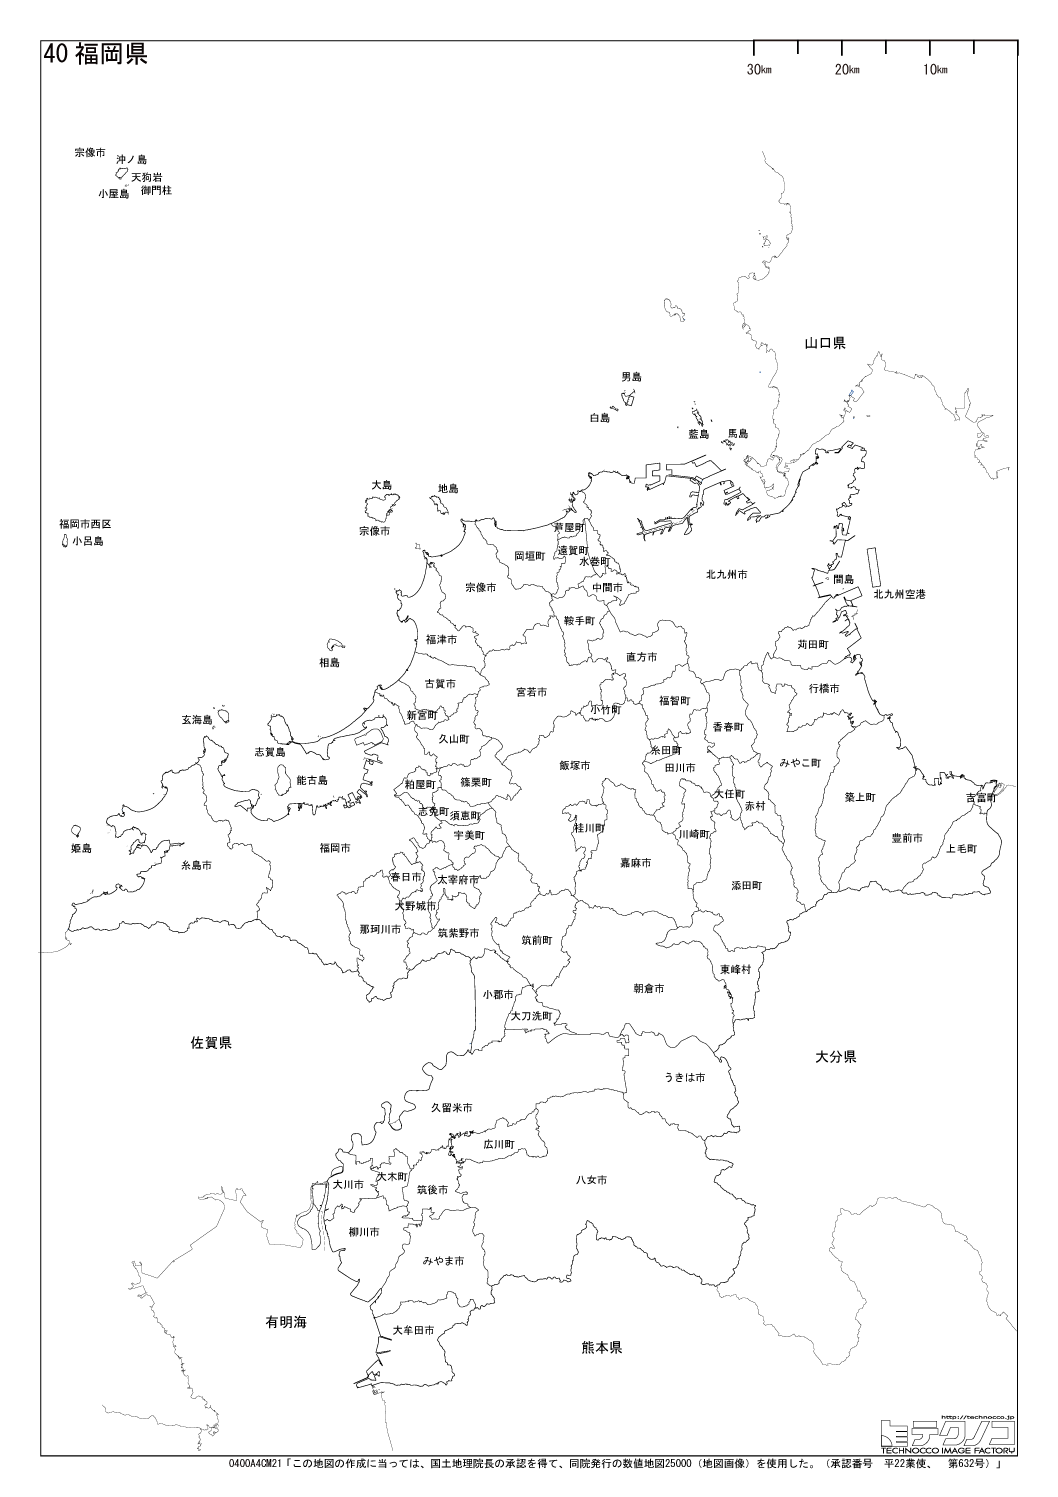 福岡県の白地図と市町村の合併情報